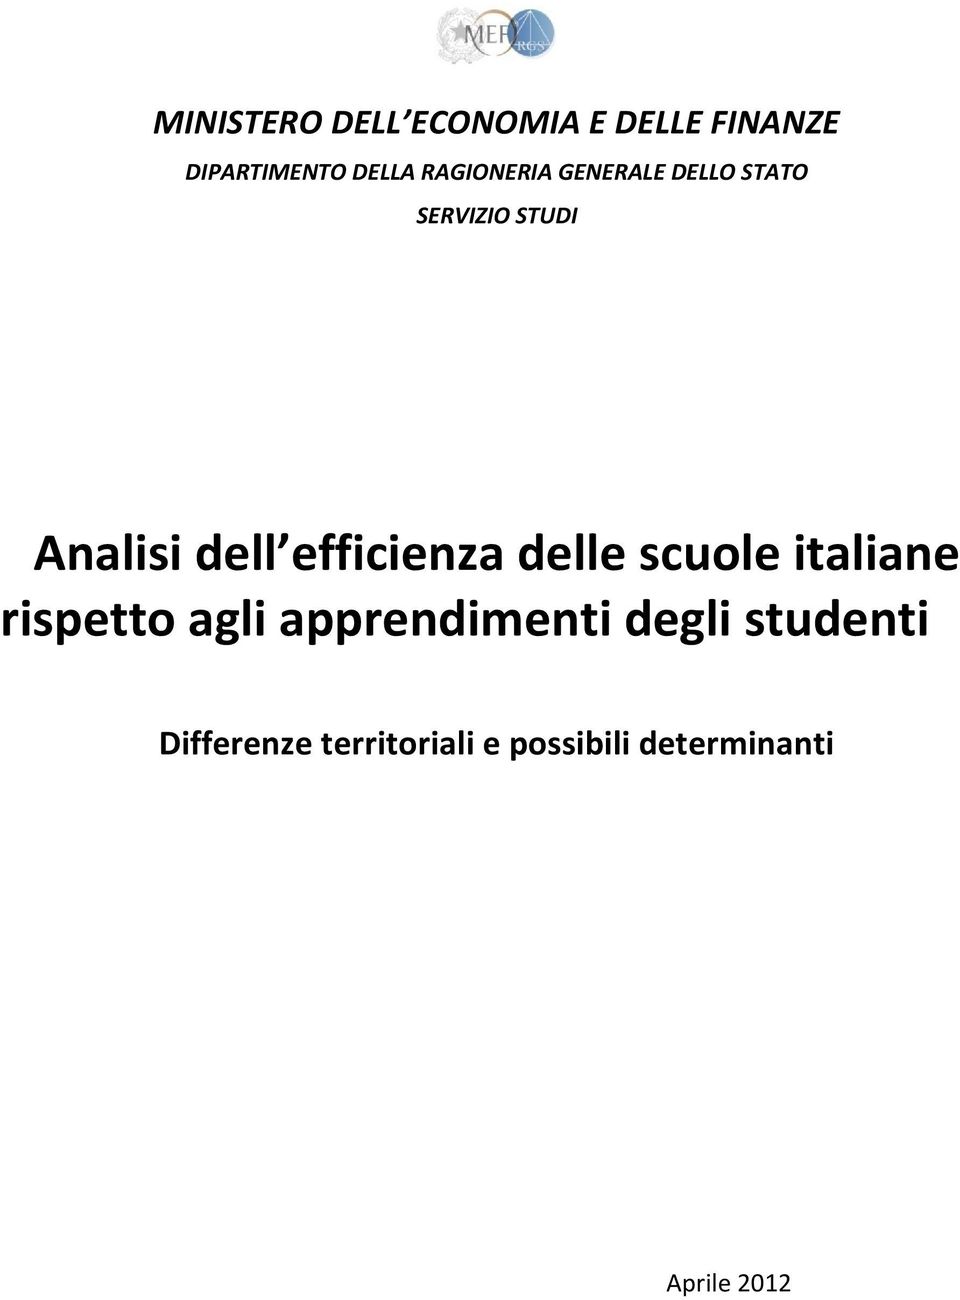 efficienza delle scuole italiane rispetto agli apprendimenti